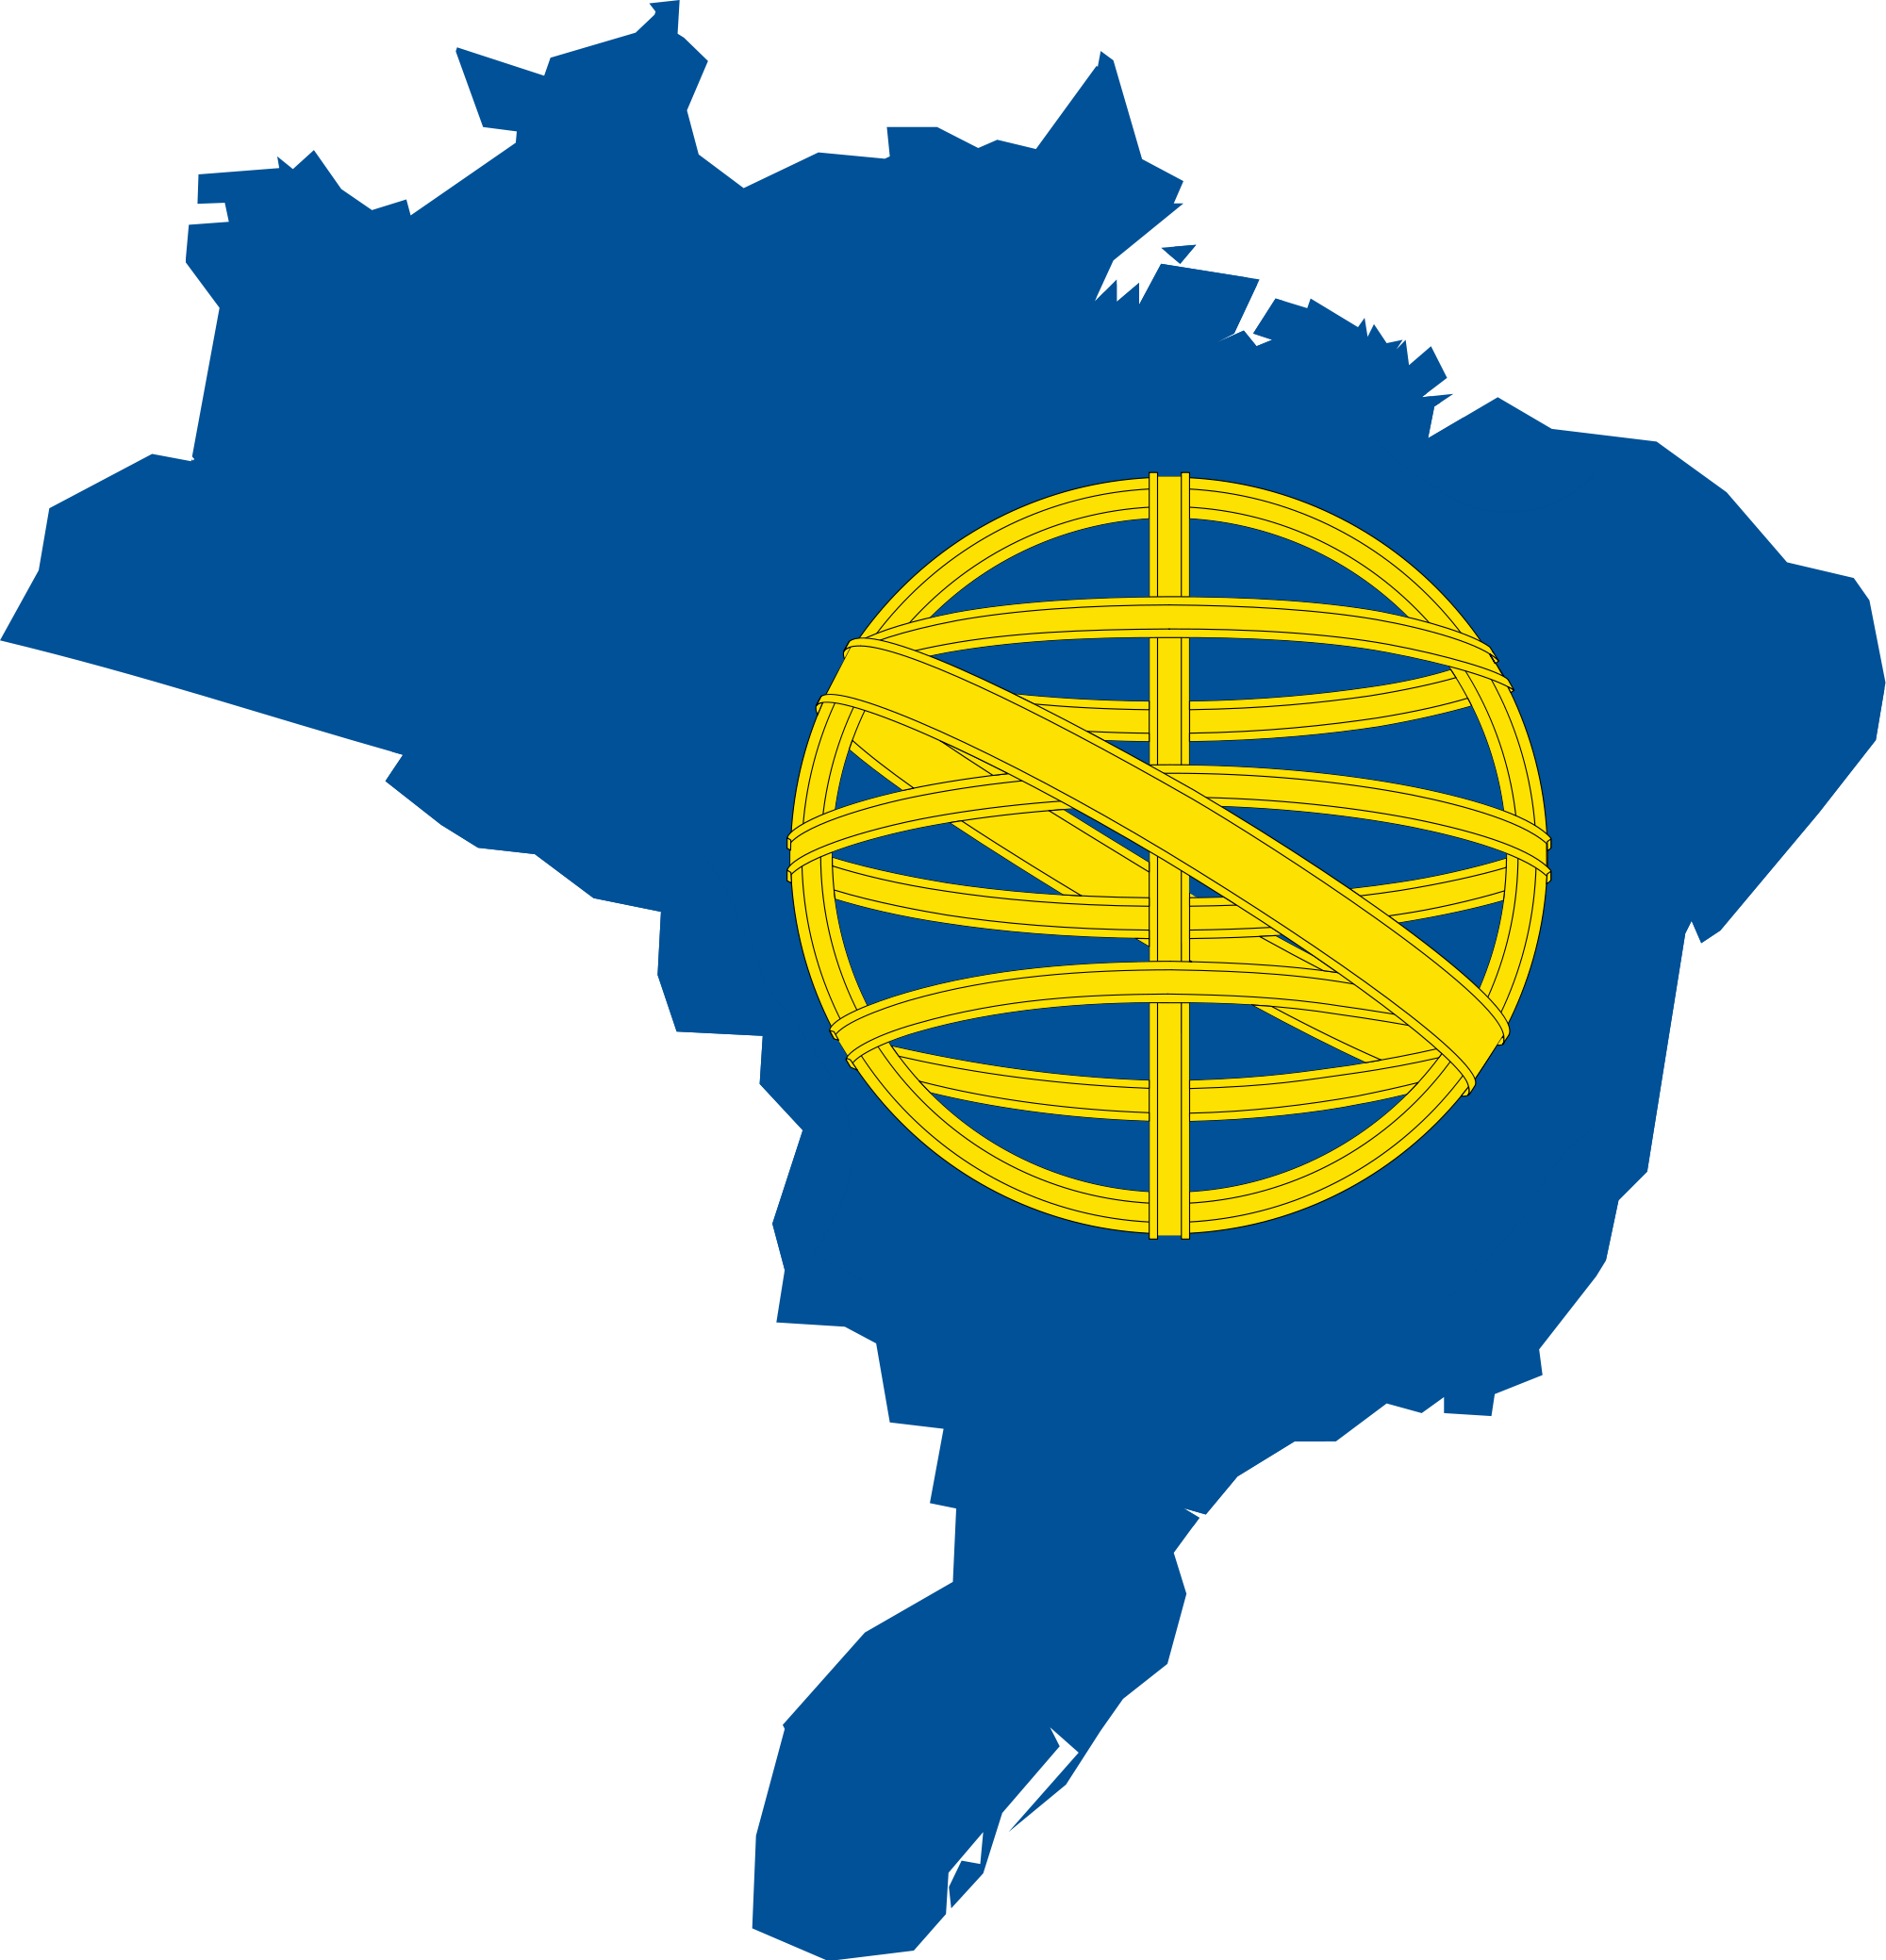 clip art flag of brazil - photo #44